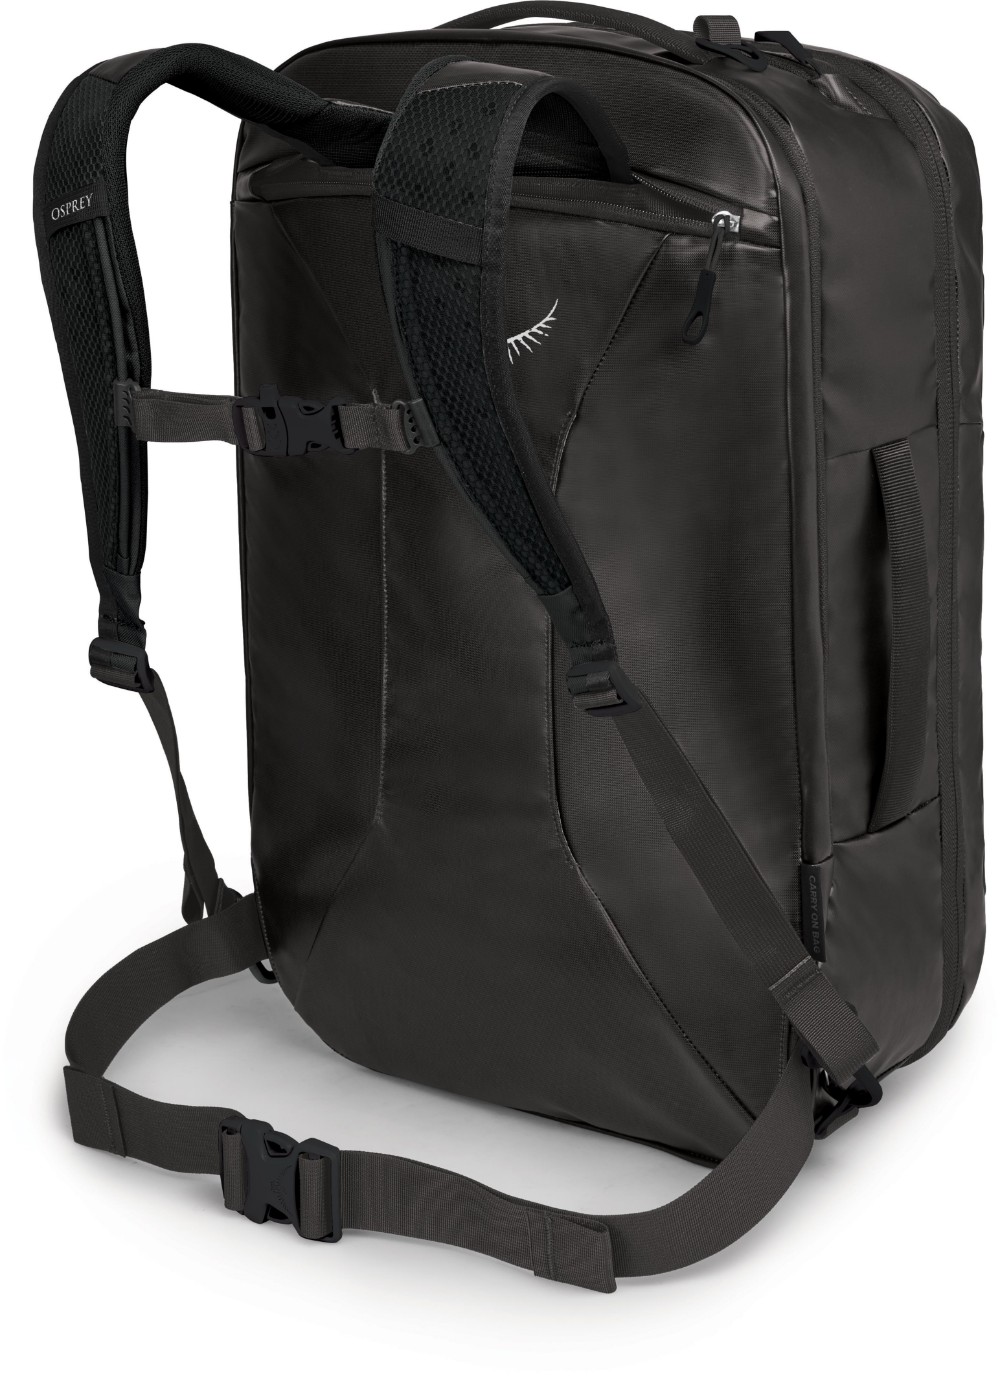 Transporter Carry-On Travel Bag image 1